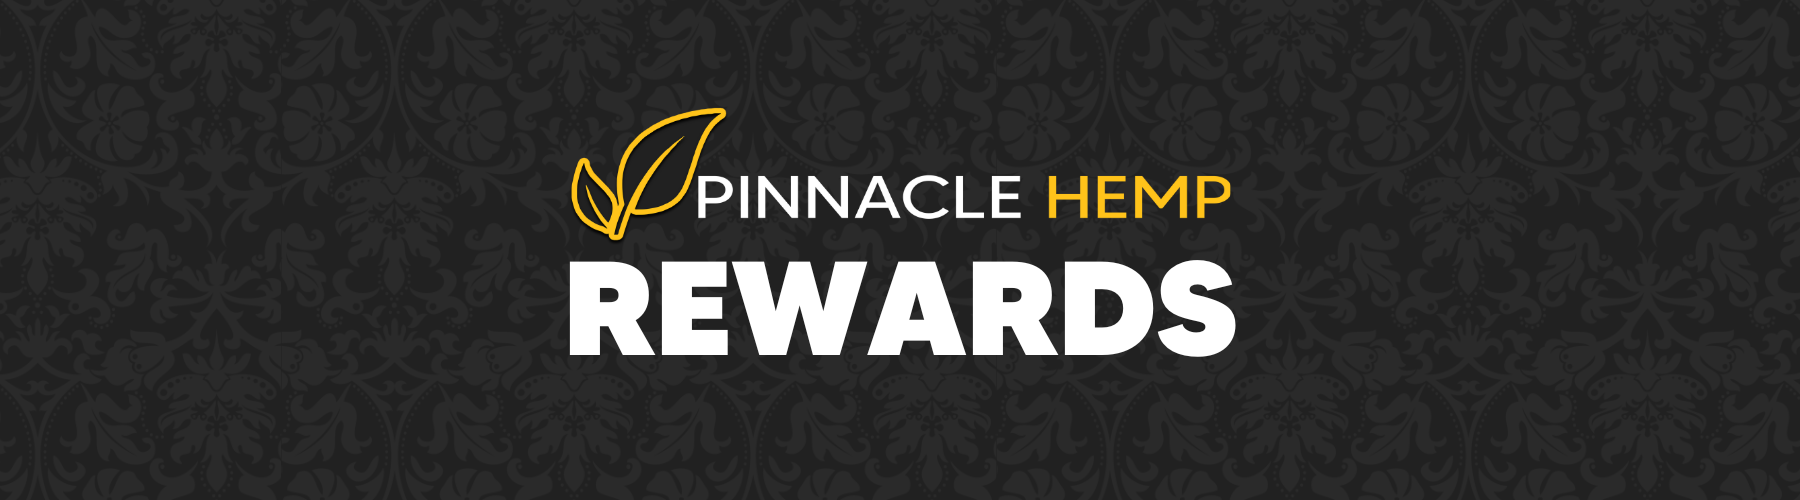 Pinnacle Hemp VIP rewards